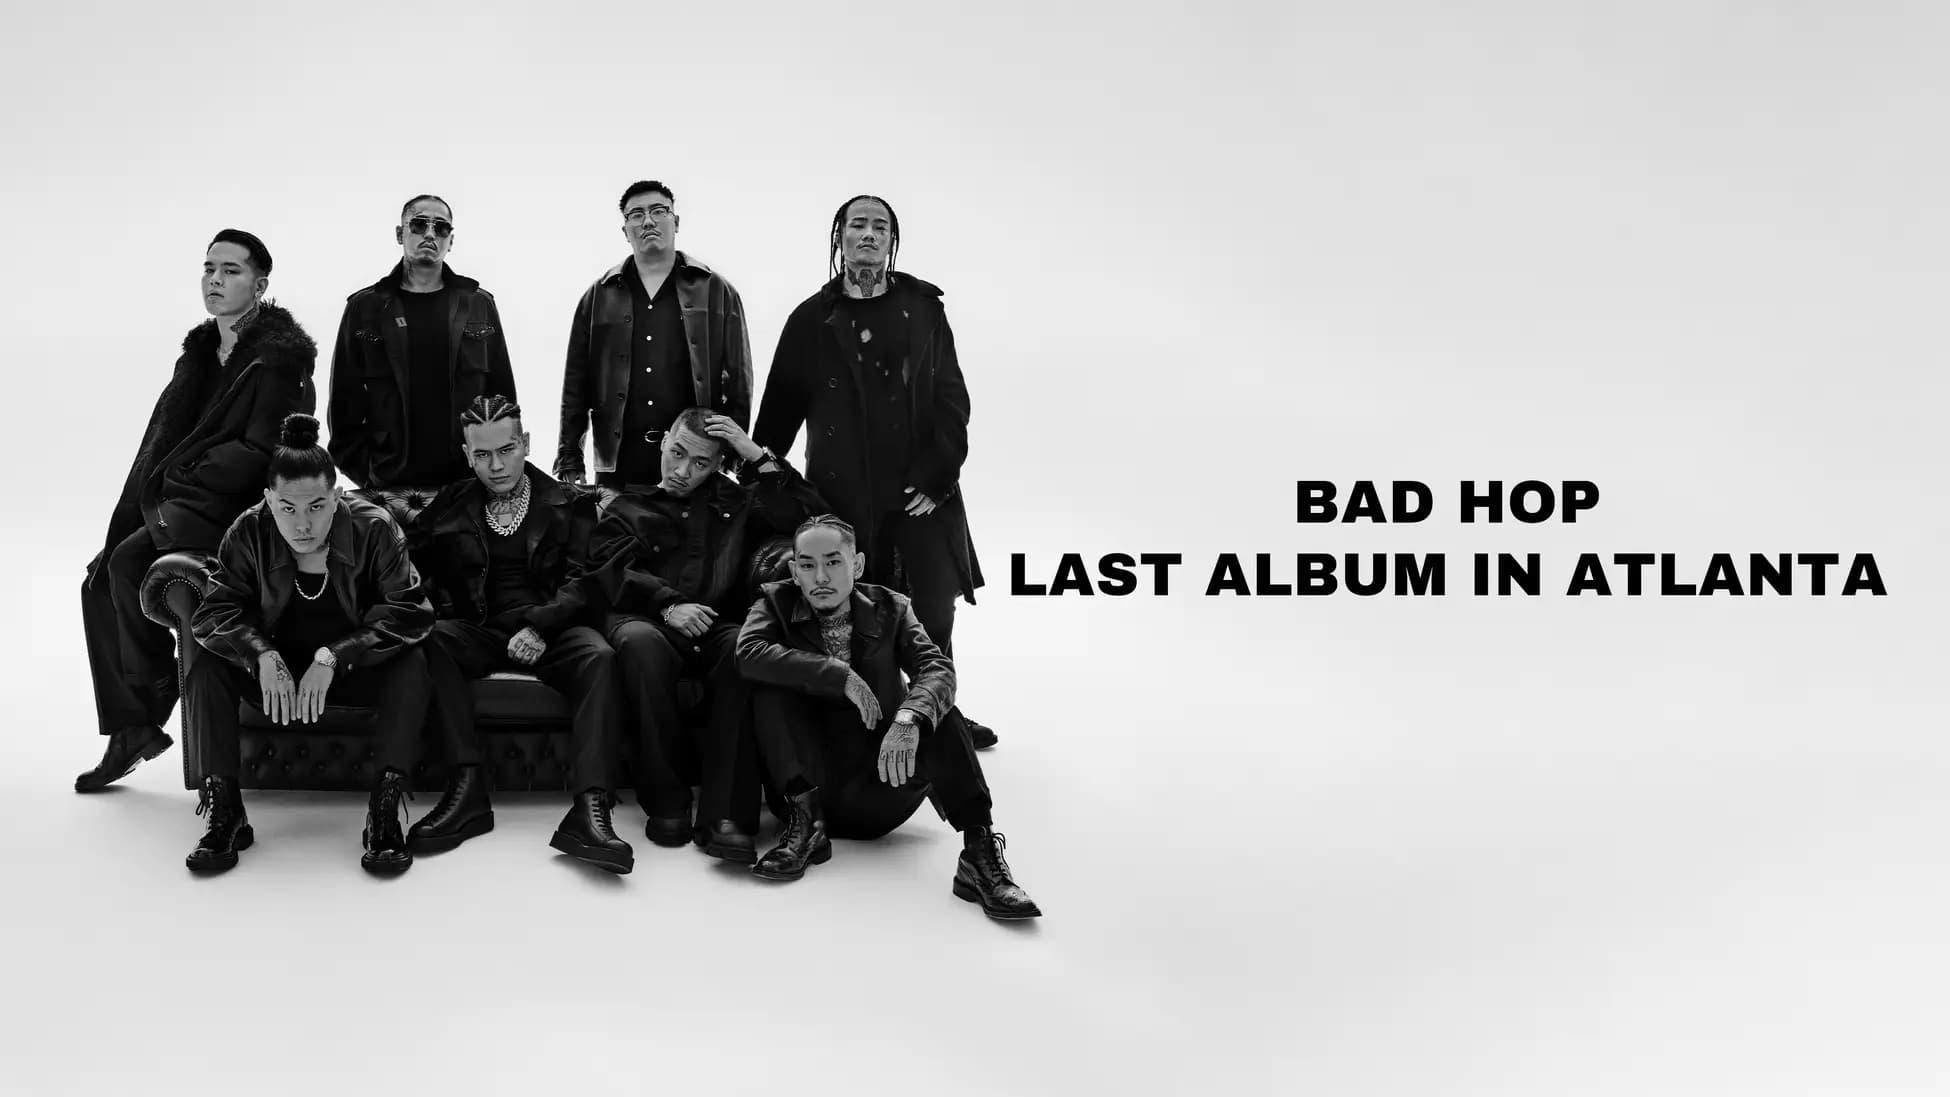 BAD HOP LAST ALBUM IN ATLANTA backdrop